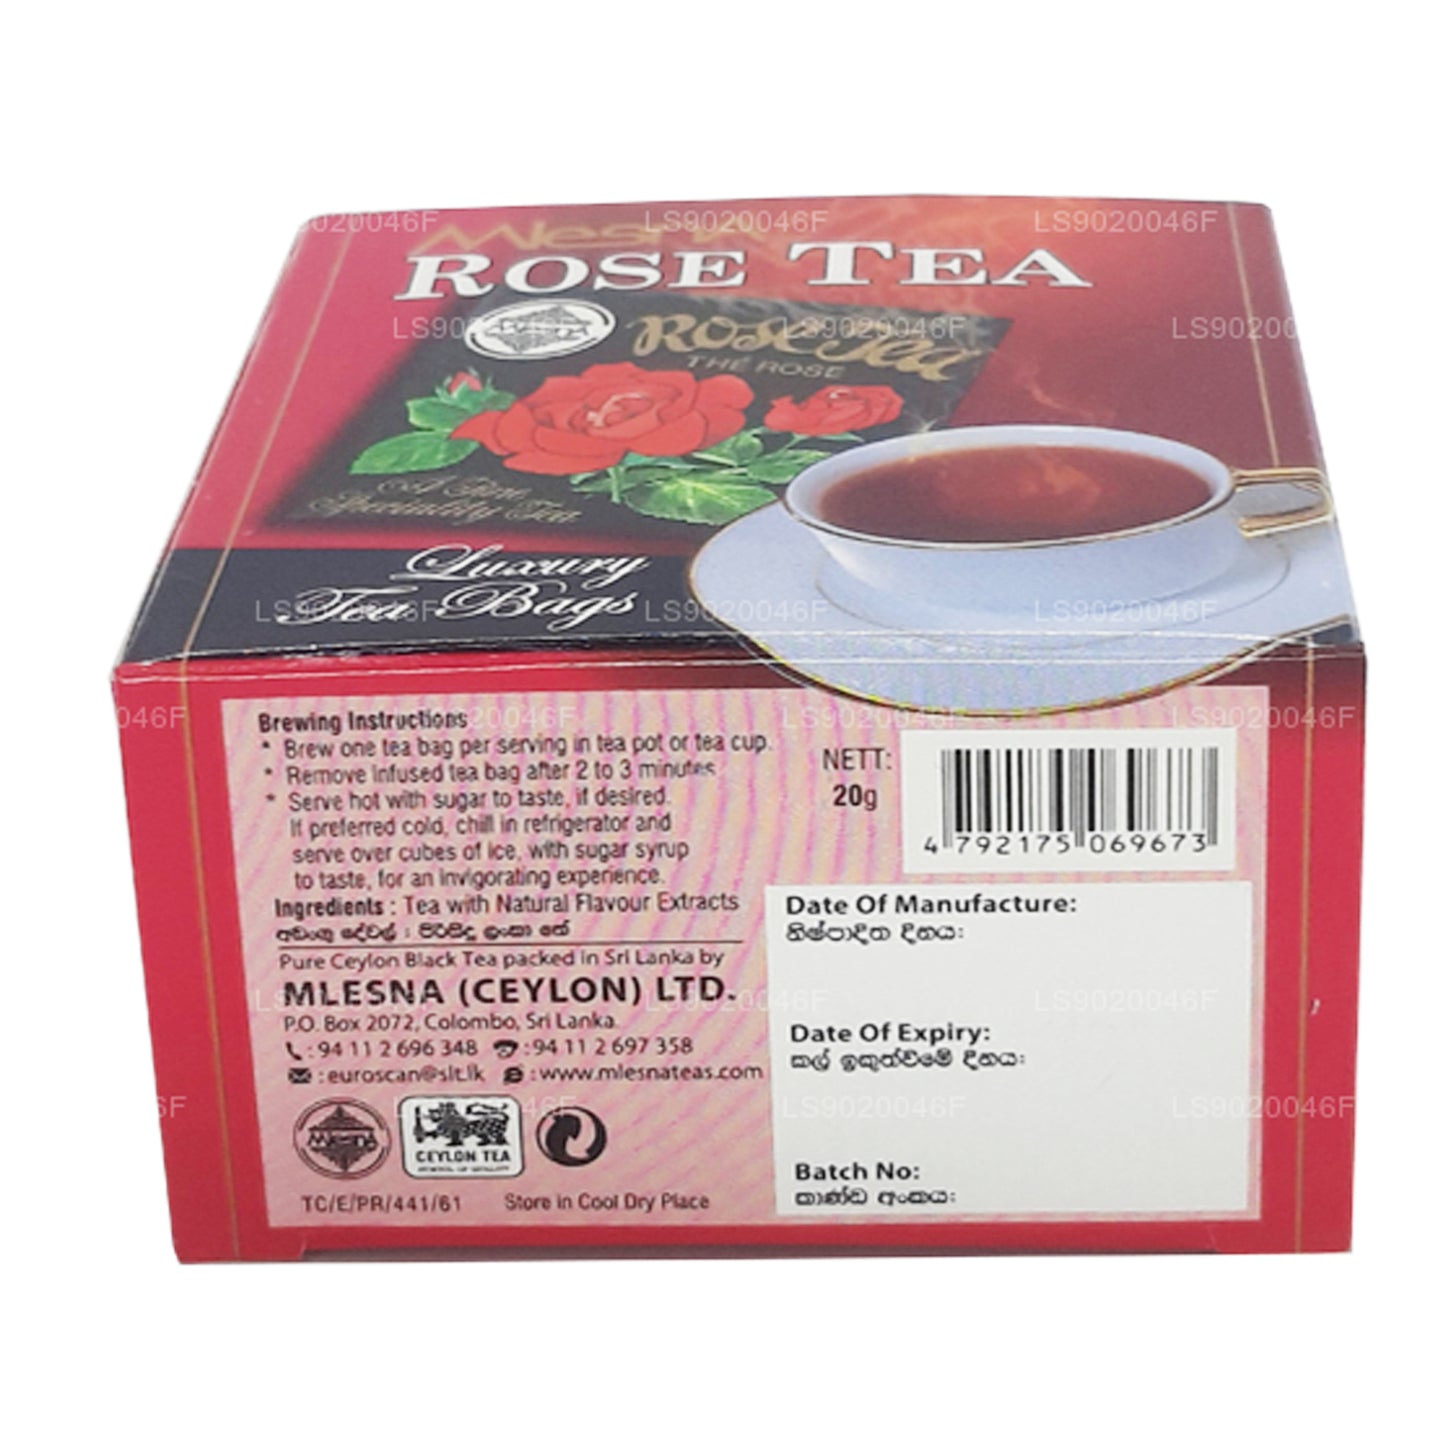 Mlesna Rose Tea (20g) 10 个豪华茶包